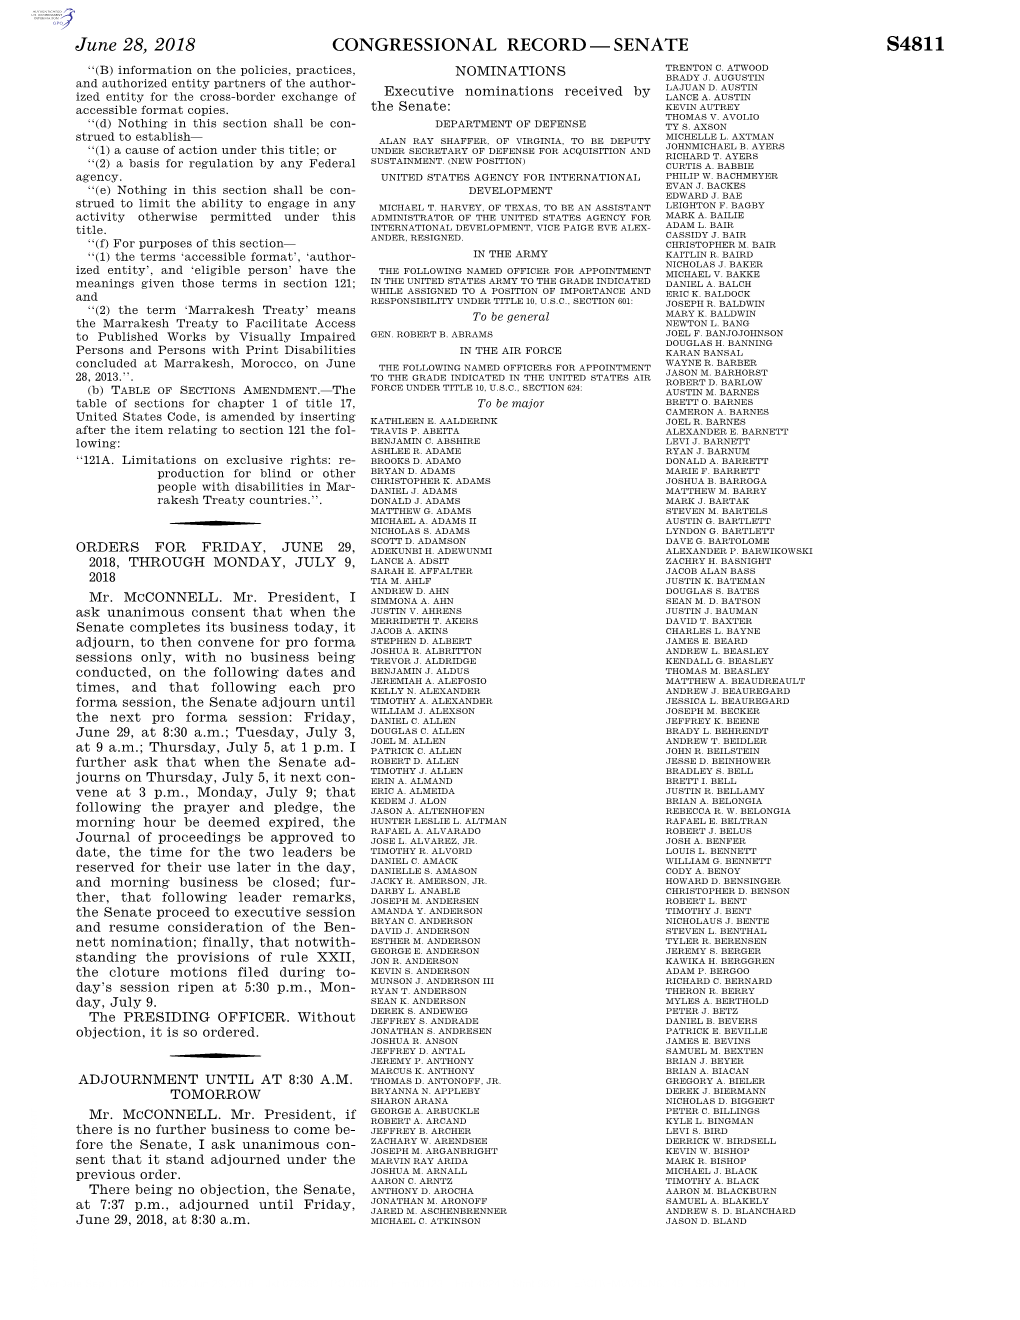 Congressional Record—Senate S4811